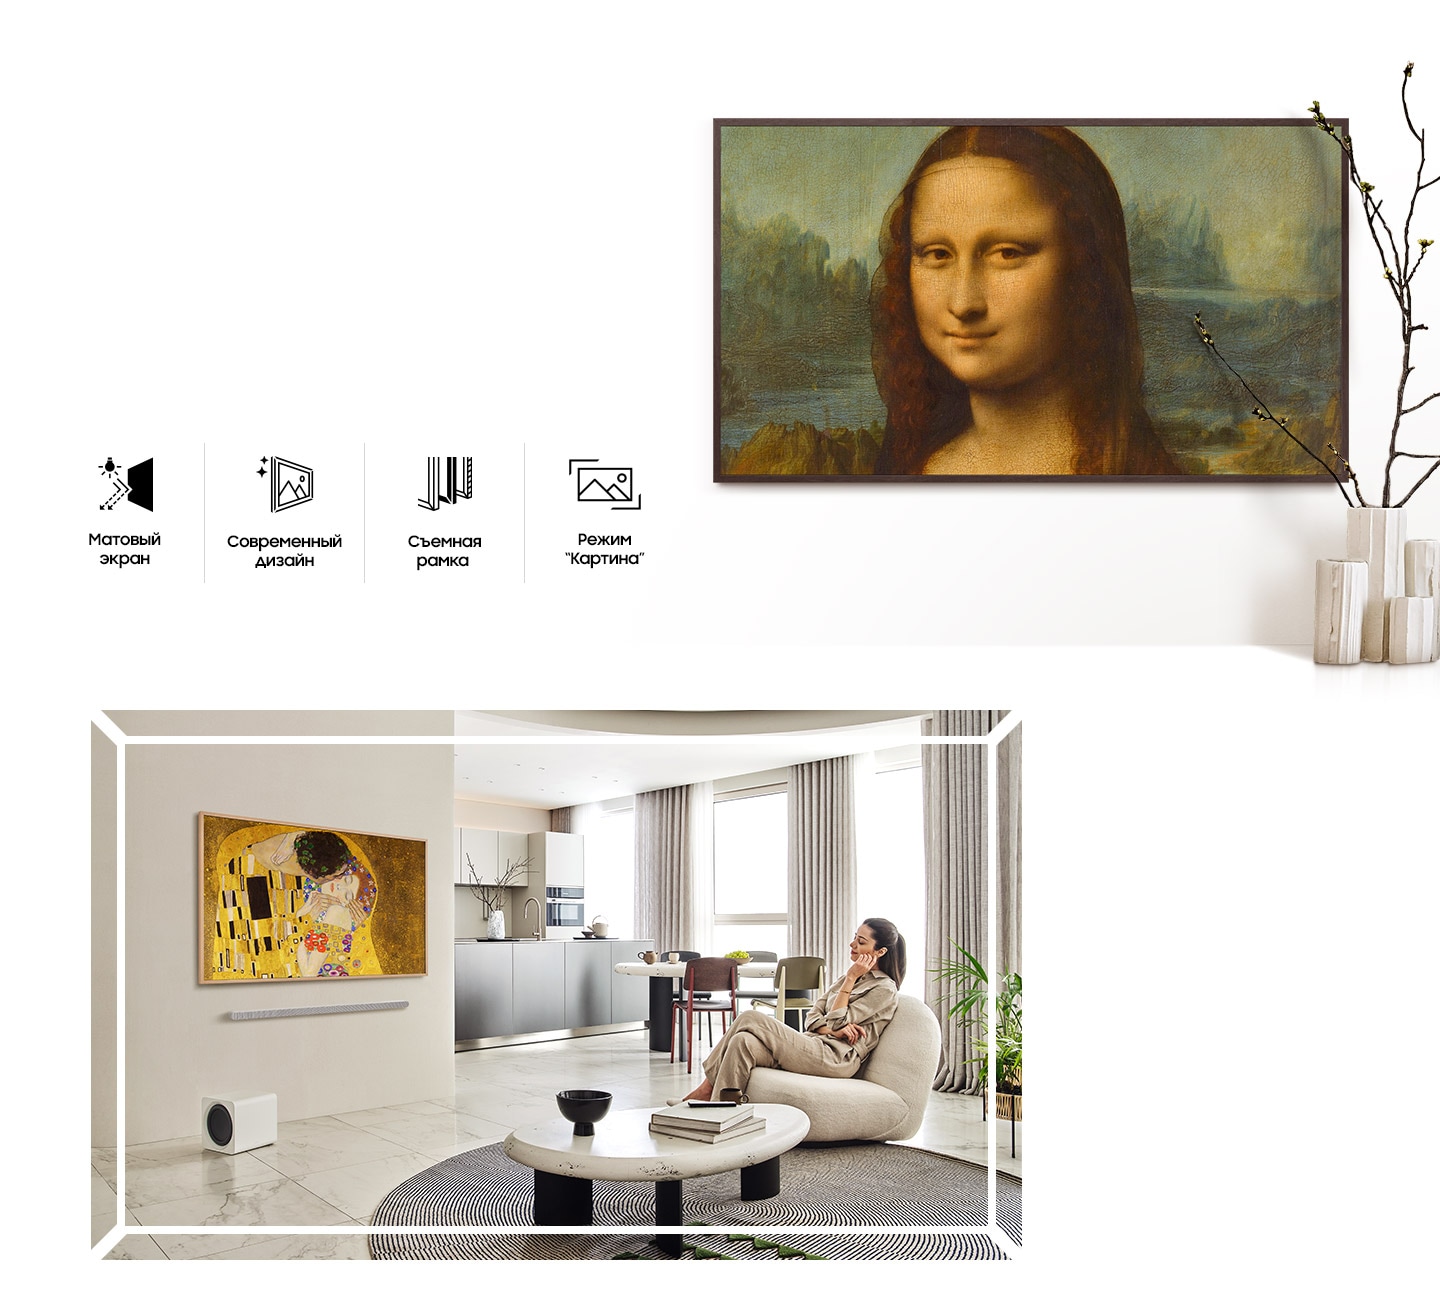 Установленные различным образом телевизоры The Frame с рамками разных цветов показывают коллекцию произведений искусства. 